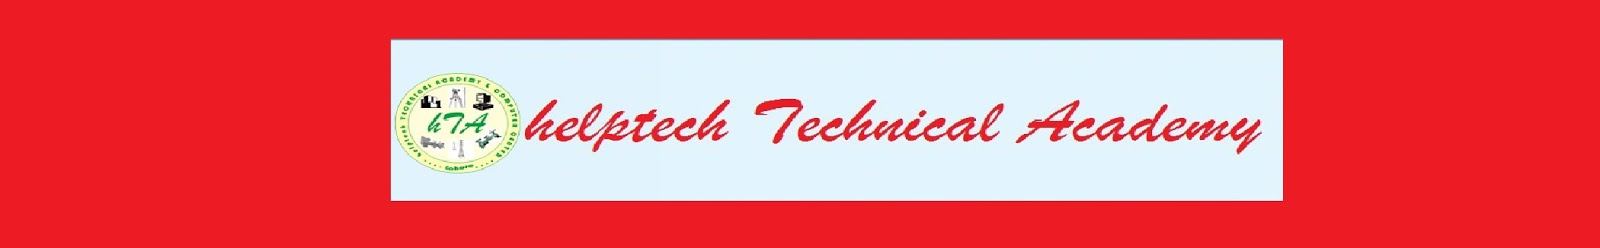 helptech Technical Academy